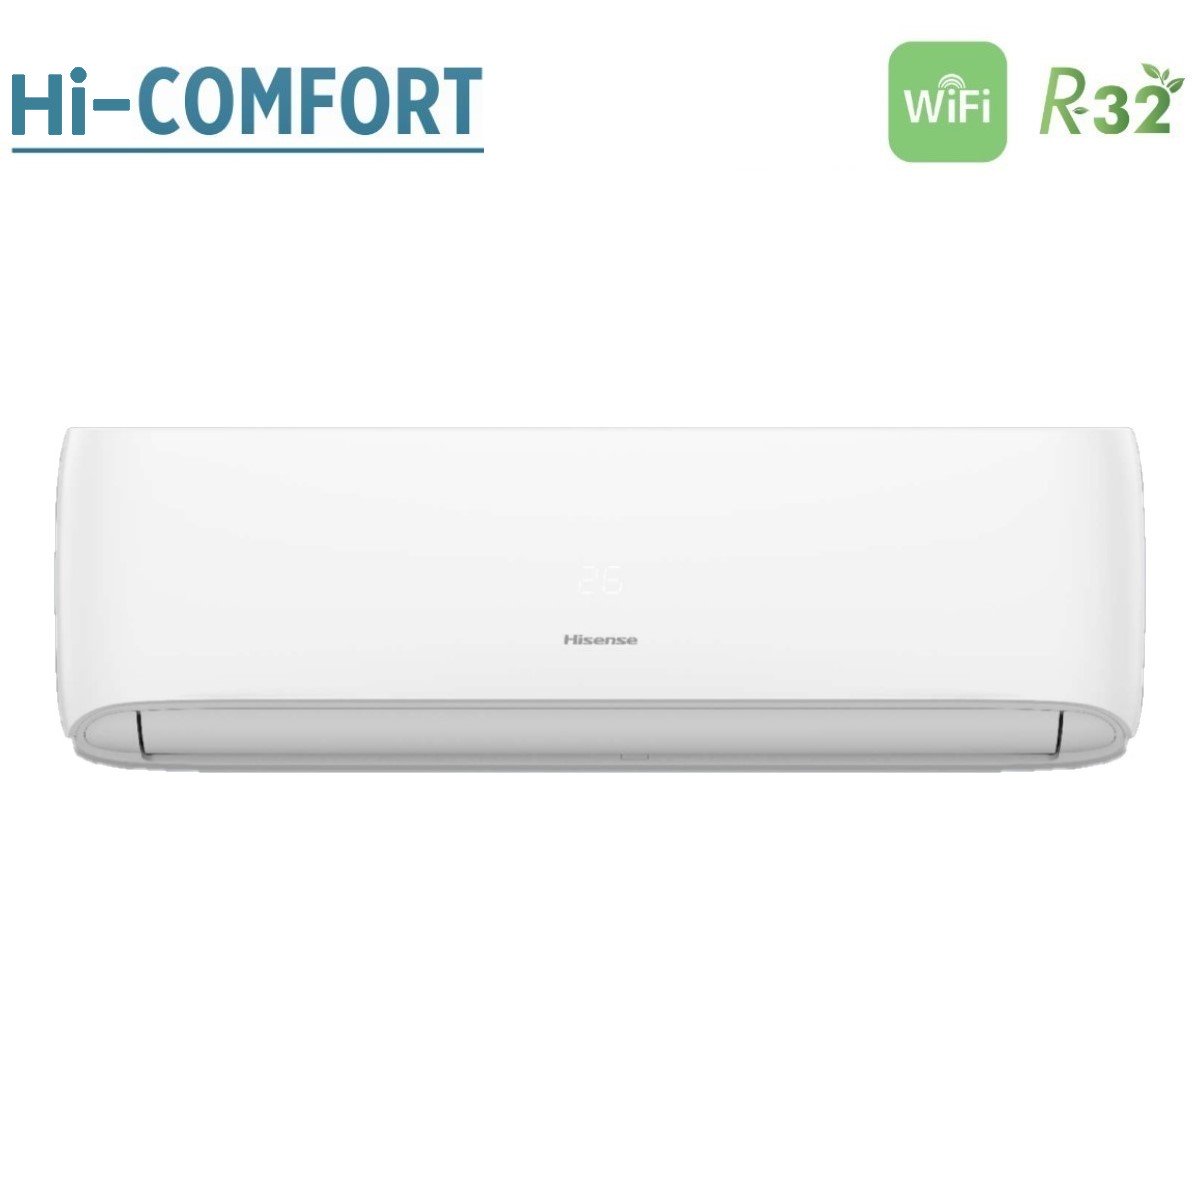 immagine-3-hisense-climatizzatore-condizionatore-hisense-trial-split-inverter-serie-hi-comfort-7912-con-3amw52u4rja-r-32-wi-fi-integrato-7000900012000